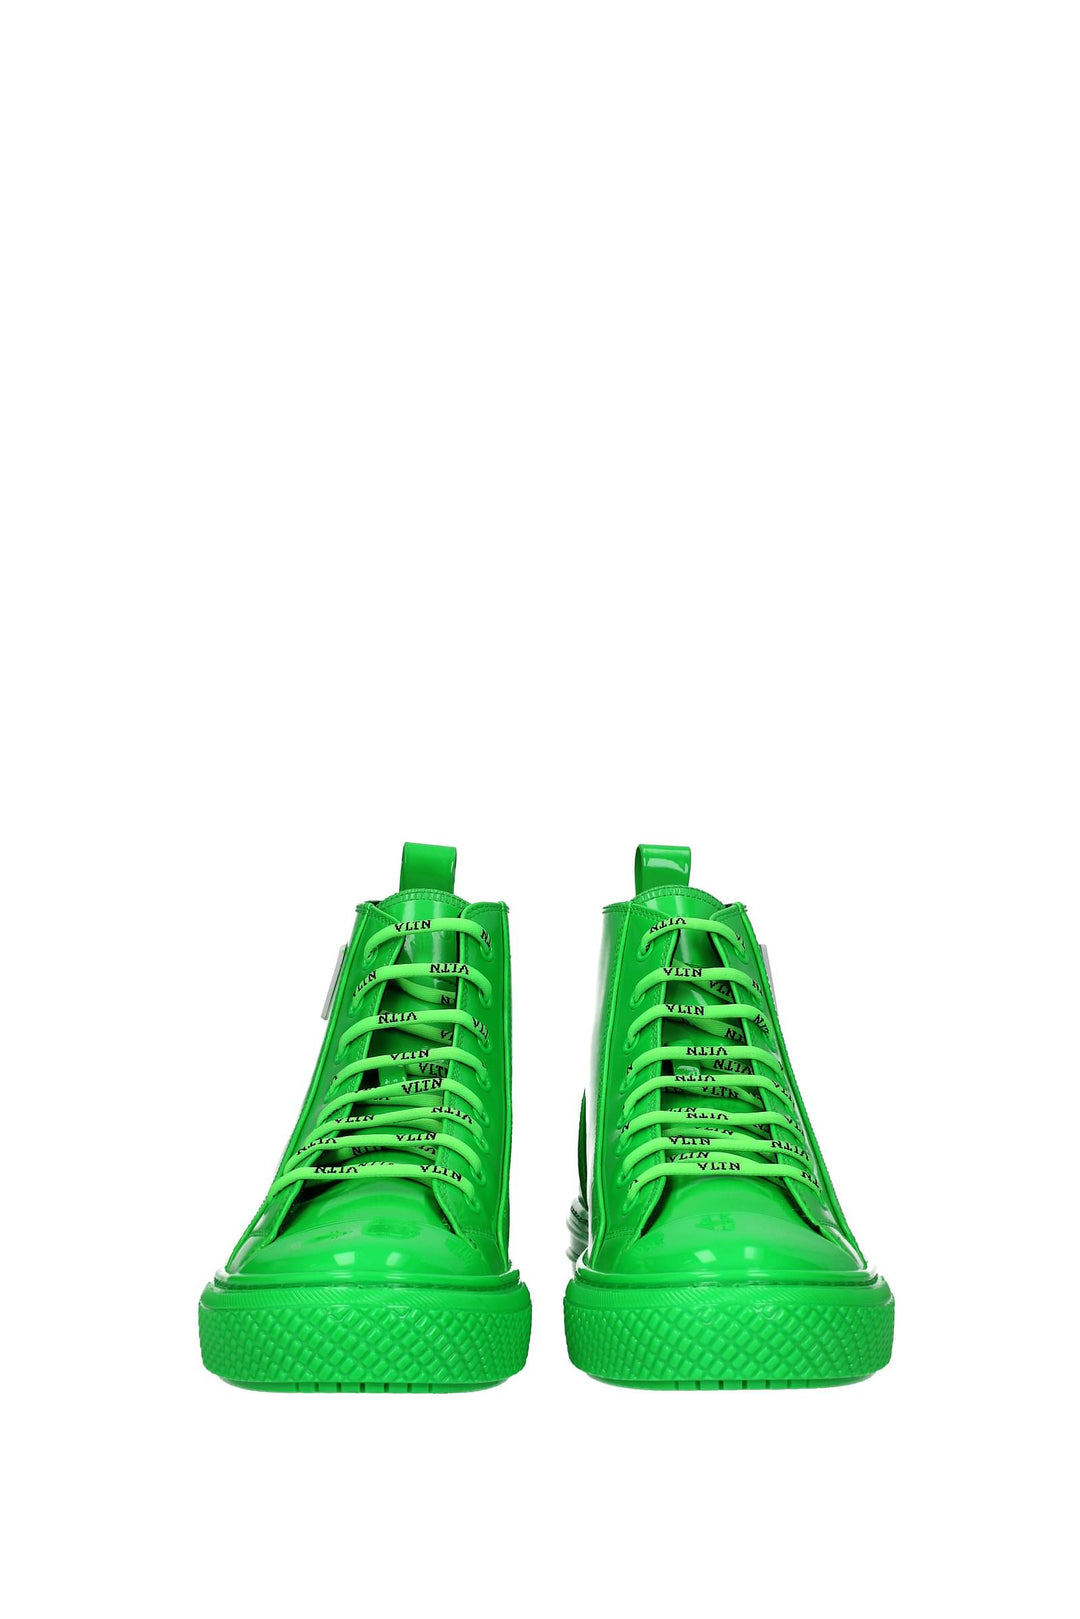 Sneakers Vltn Vernice Verde Verde Fluo - Valentino Garavani - Uomo